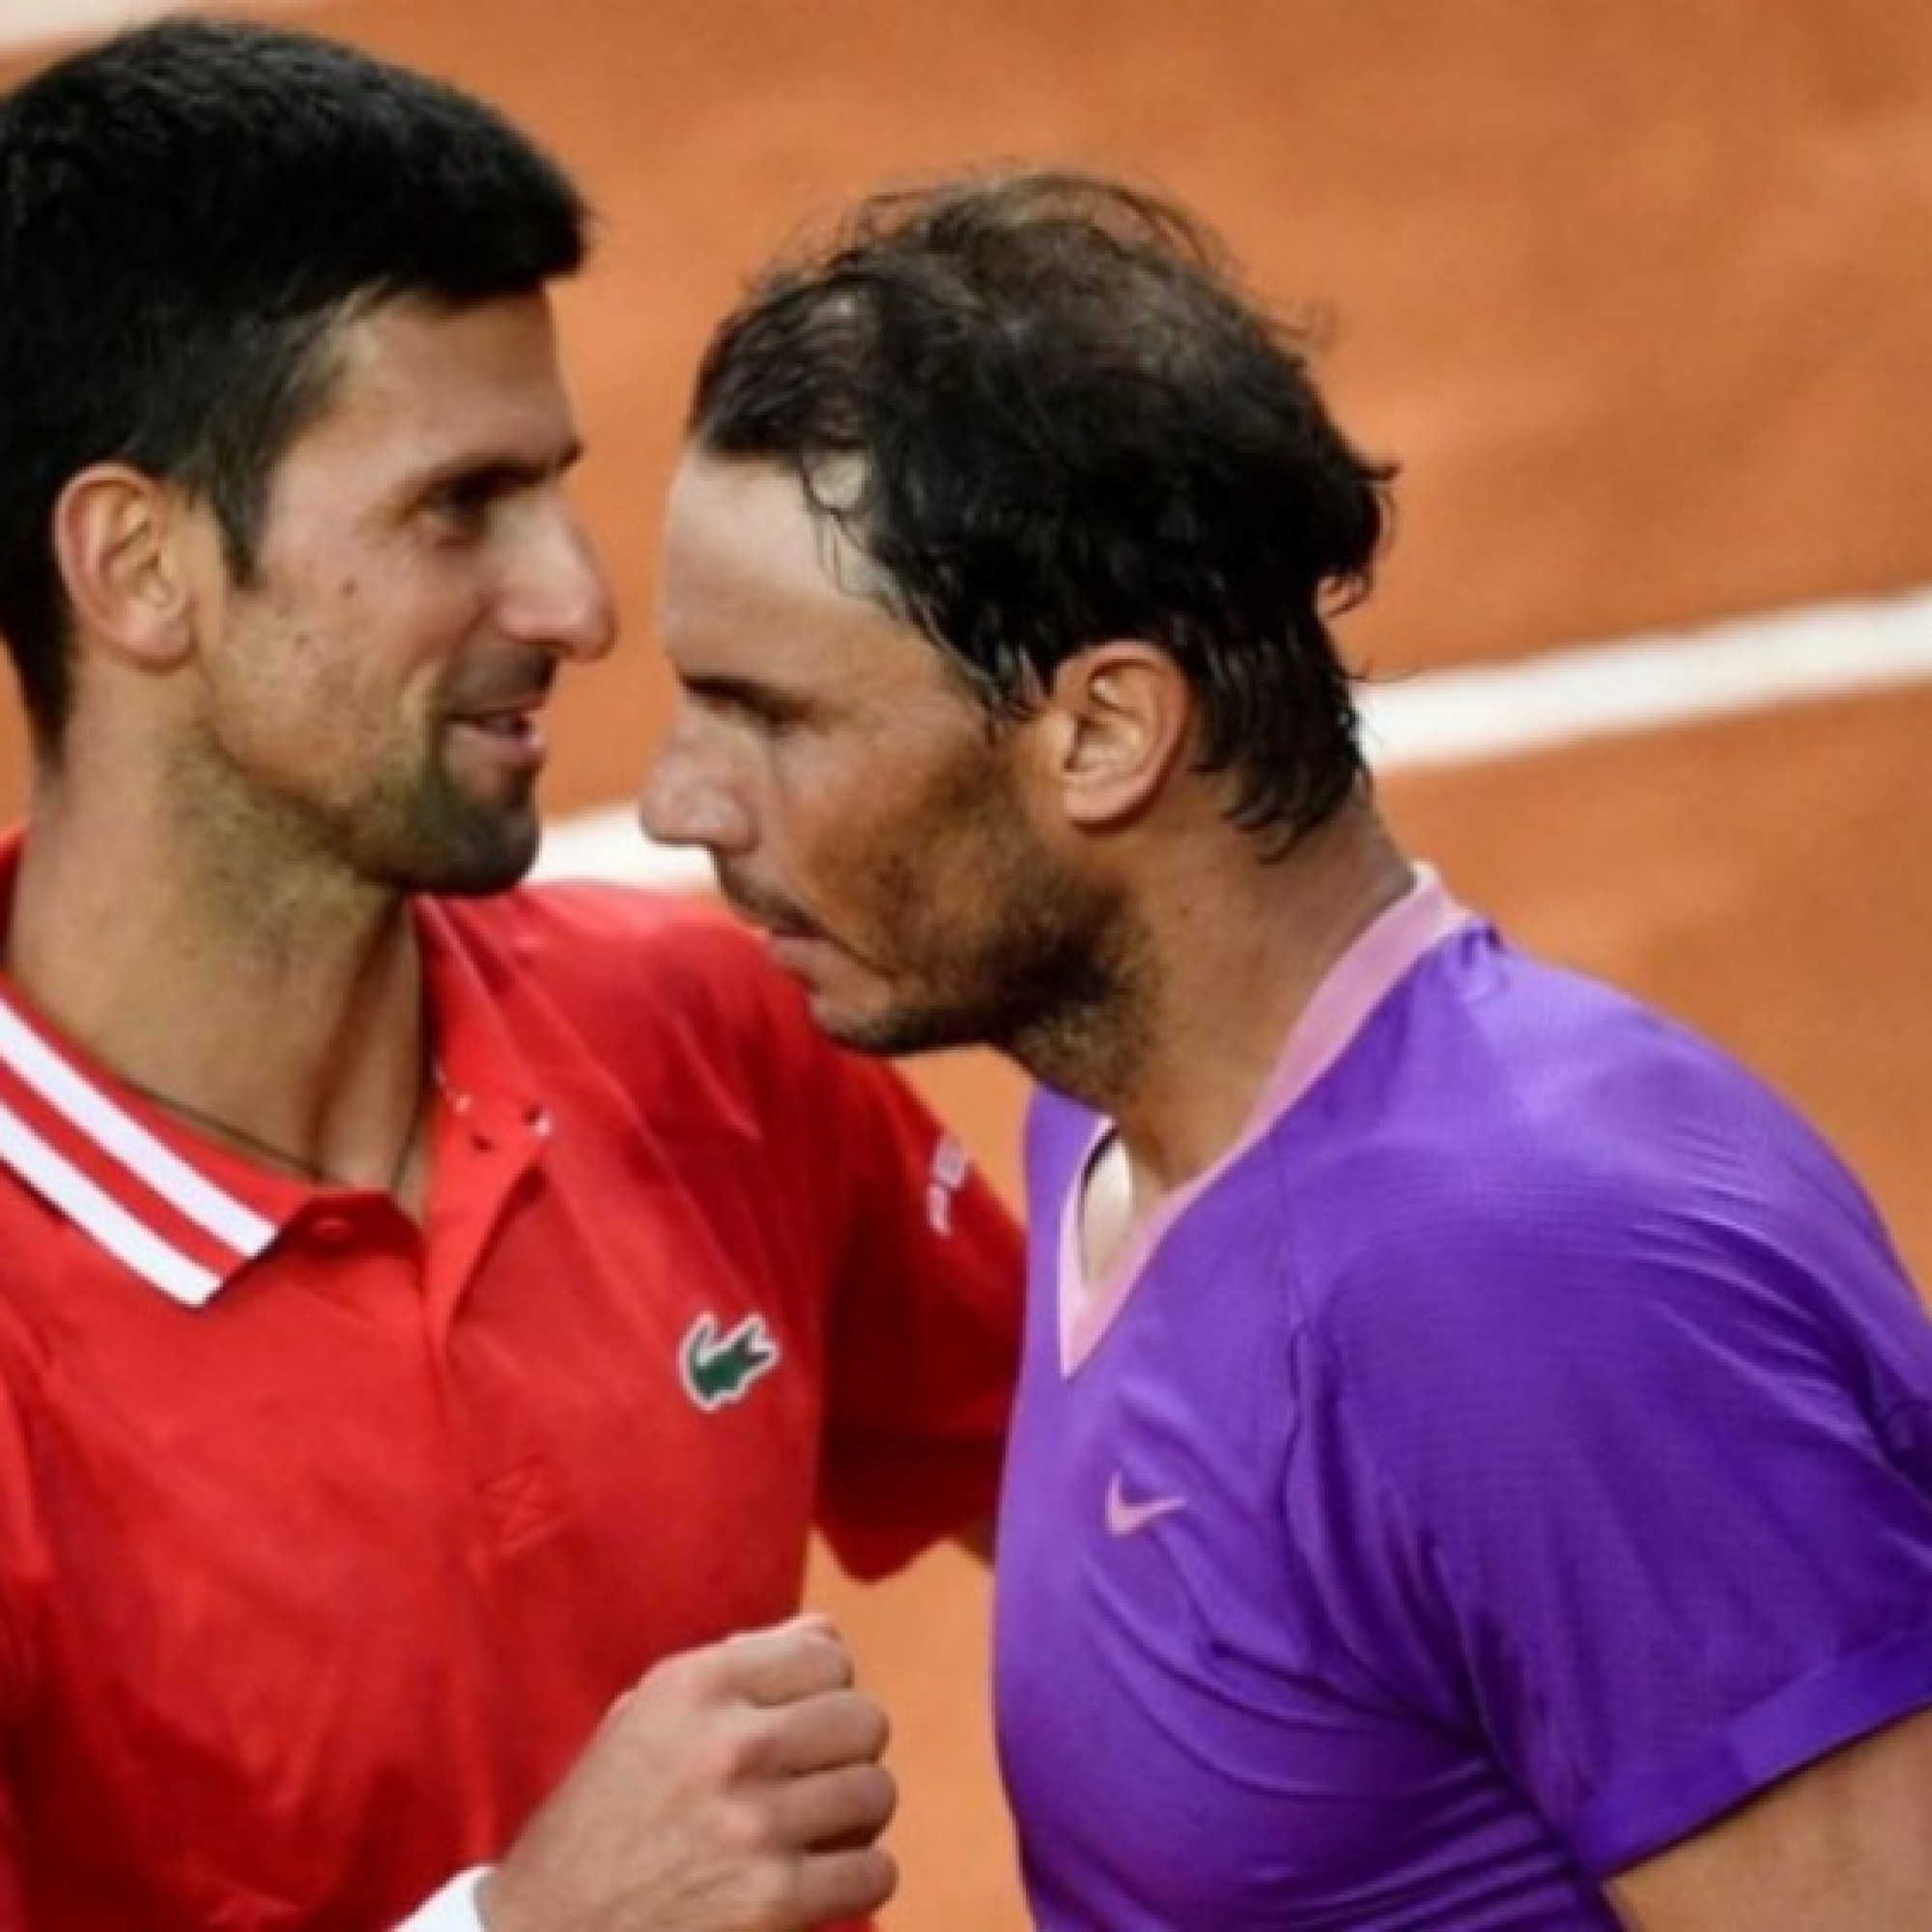  - Hồi hộp chờ chung kết "trong mơ" Nadal - Djokovic, sau khi phân nhánh Rome Open